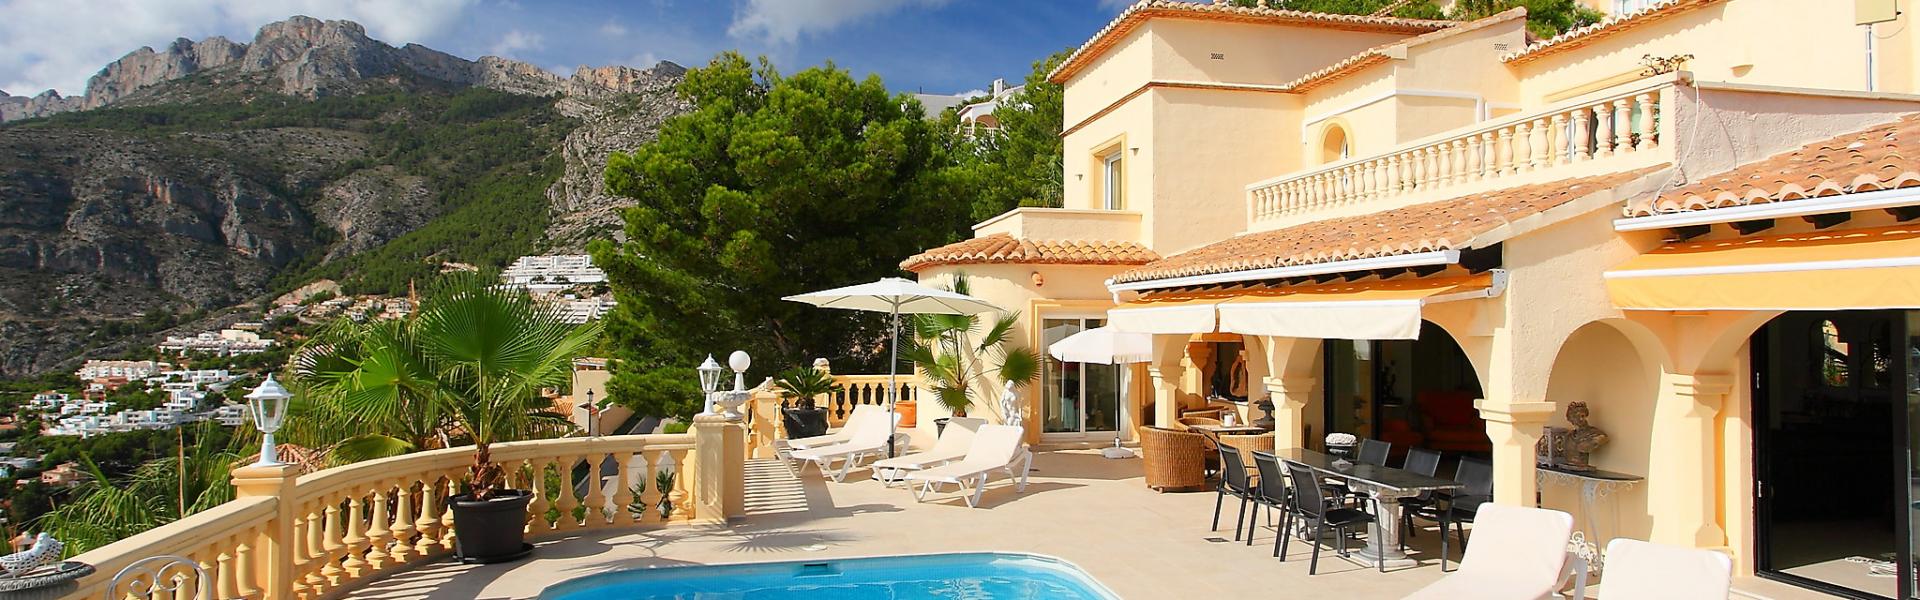 Vakantiehuis in Frankrijk met zwembad - HomeToGo